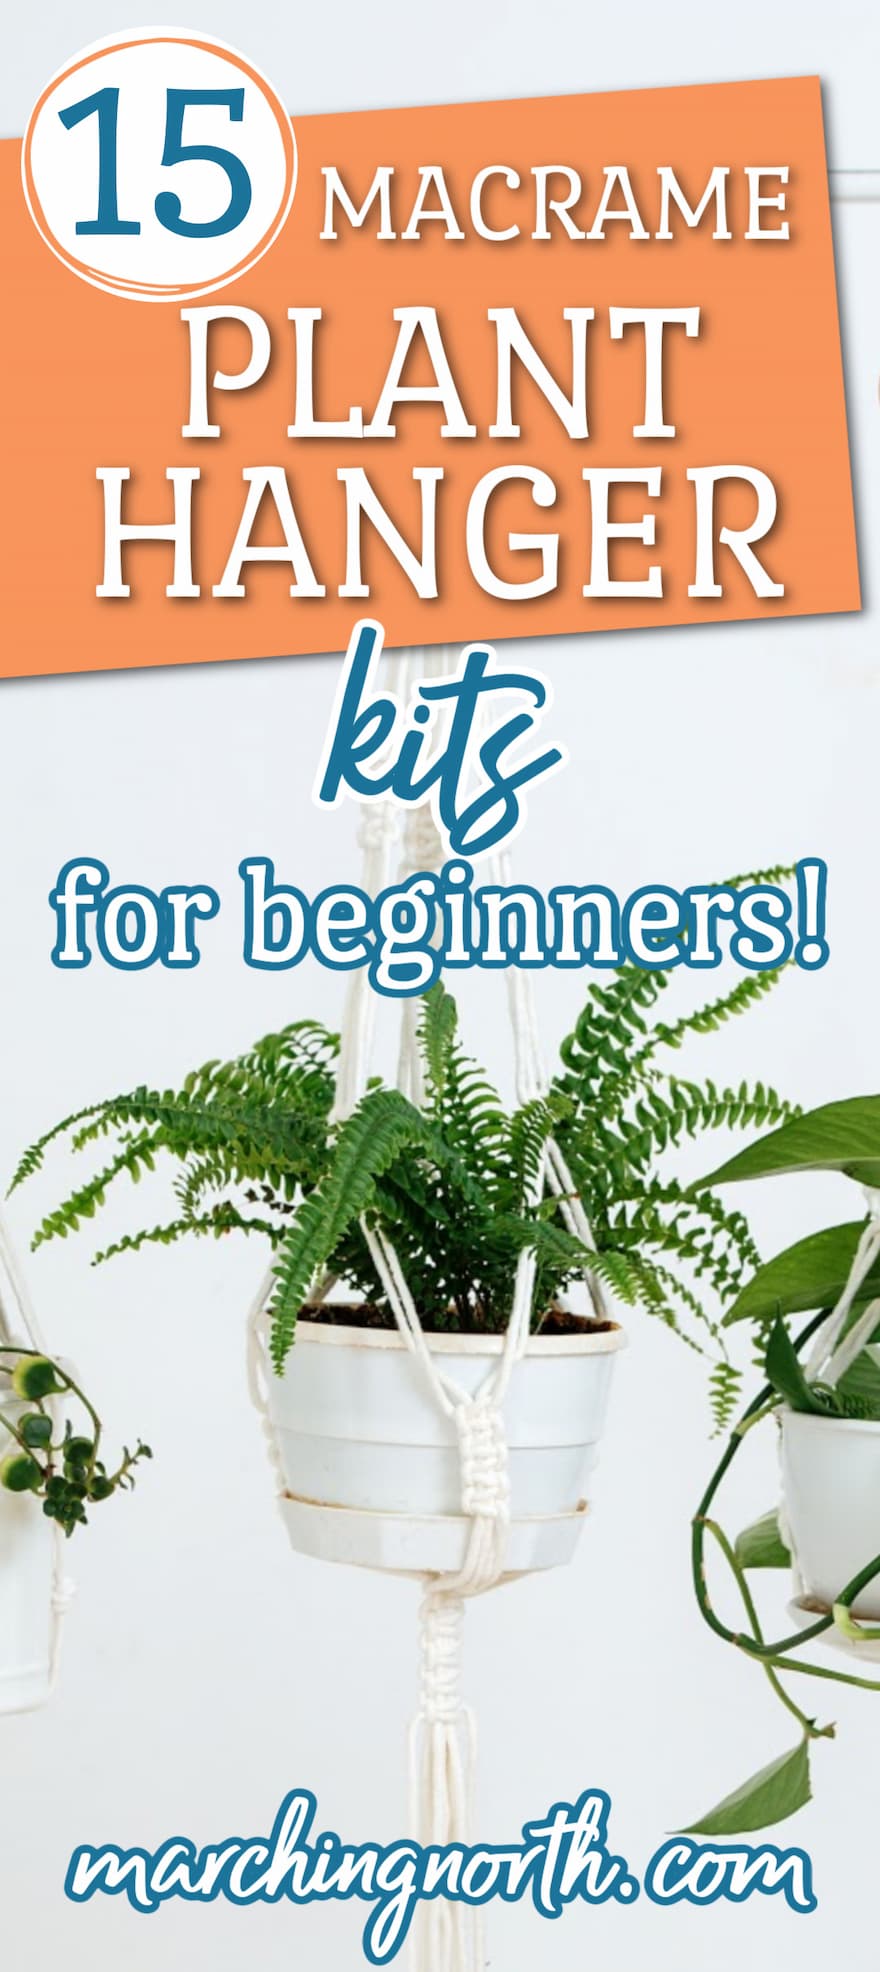 DIY Macrame Plant Hanger Kit, DIY Macrame Kit, Plant Hanger Kit, Macrame Kit  